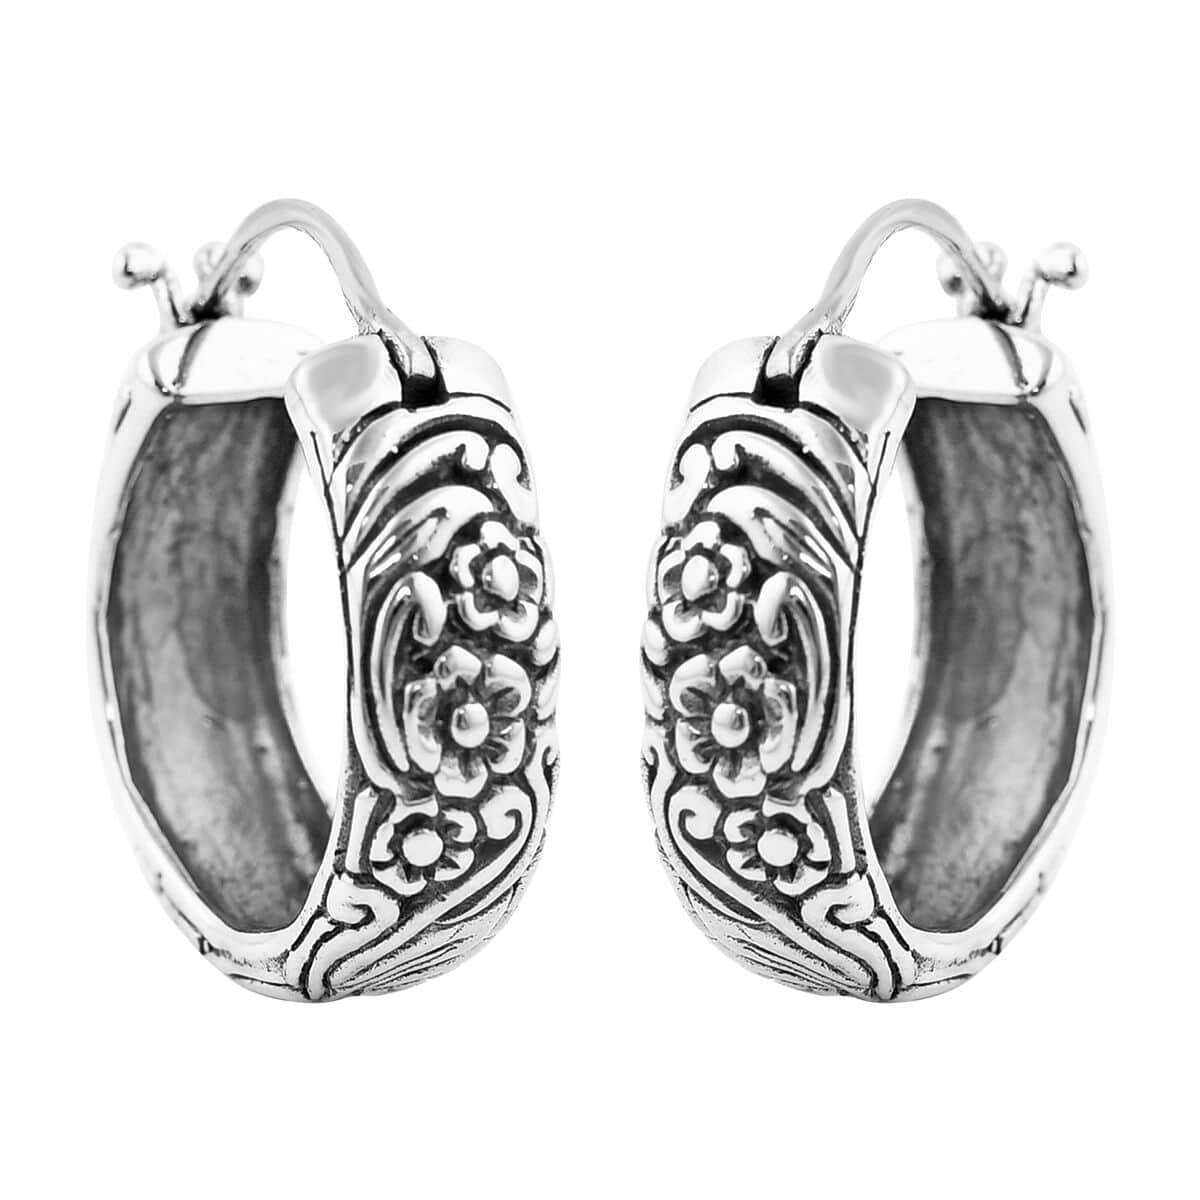 Bali Legacy Sterling Silver Frangipani Flower Hoop Earrings 11.65 Grams